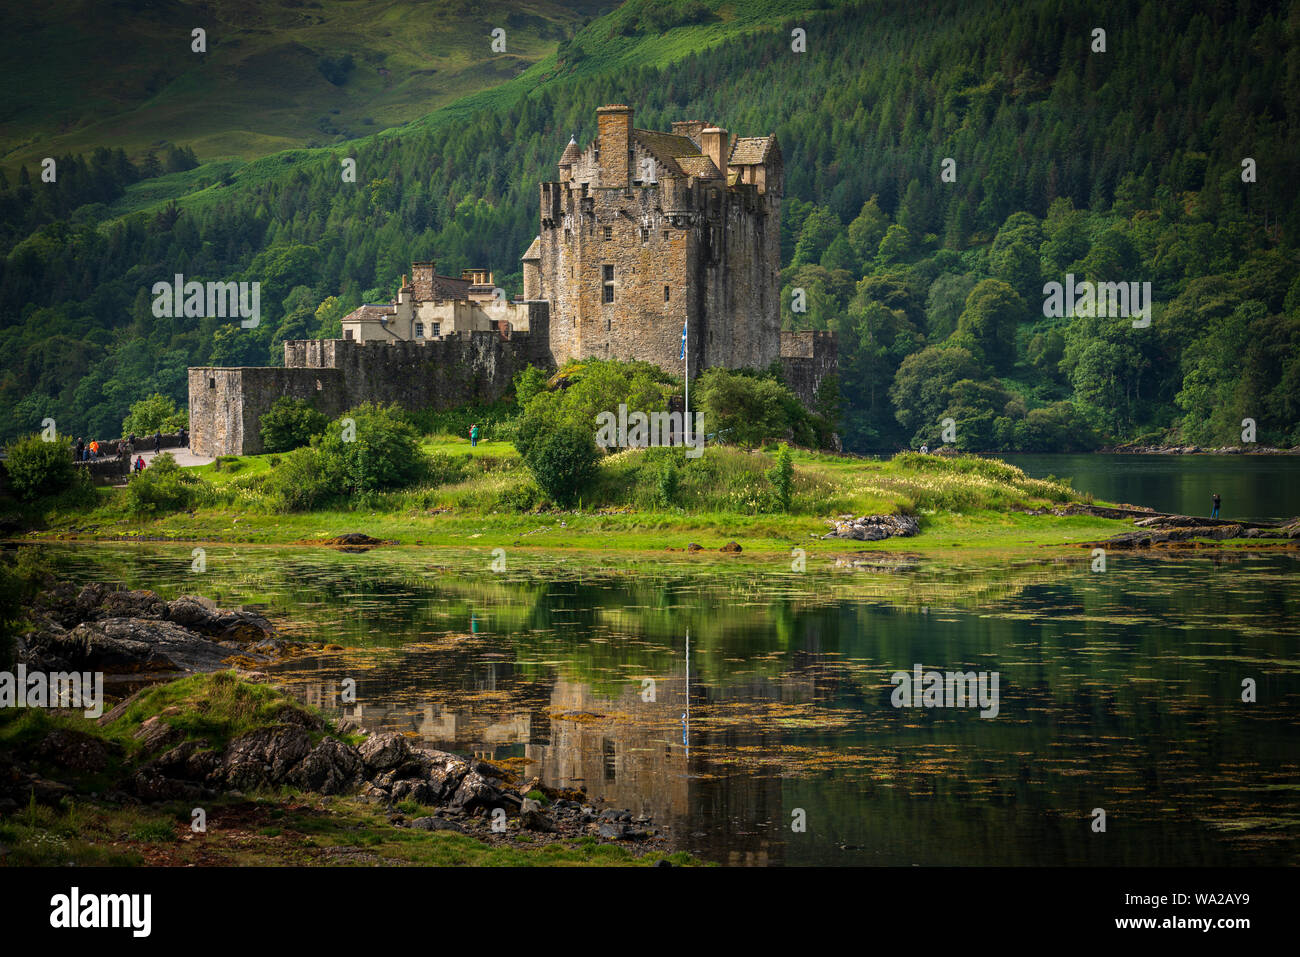 Le Château d'Eilean Donan est l'un des châteaux les plus reconnues en Ecosse et siège où trois lochs rencontrez, niché au milieu de beaux paysages des Highlands. Banque D'Images